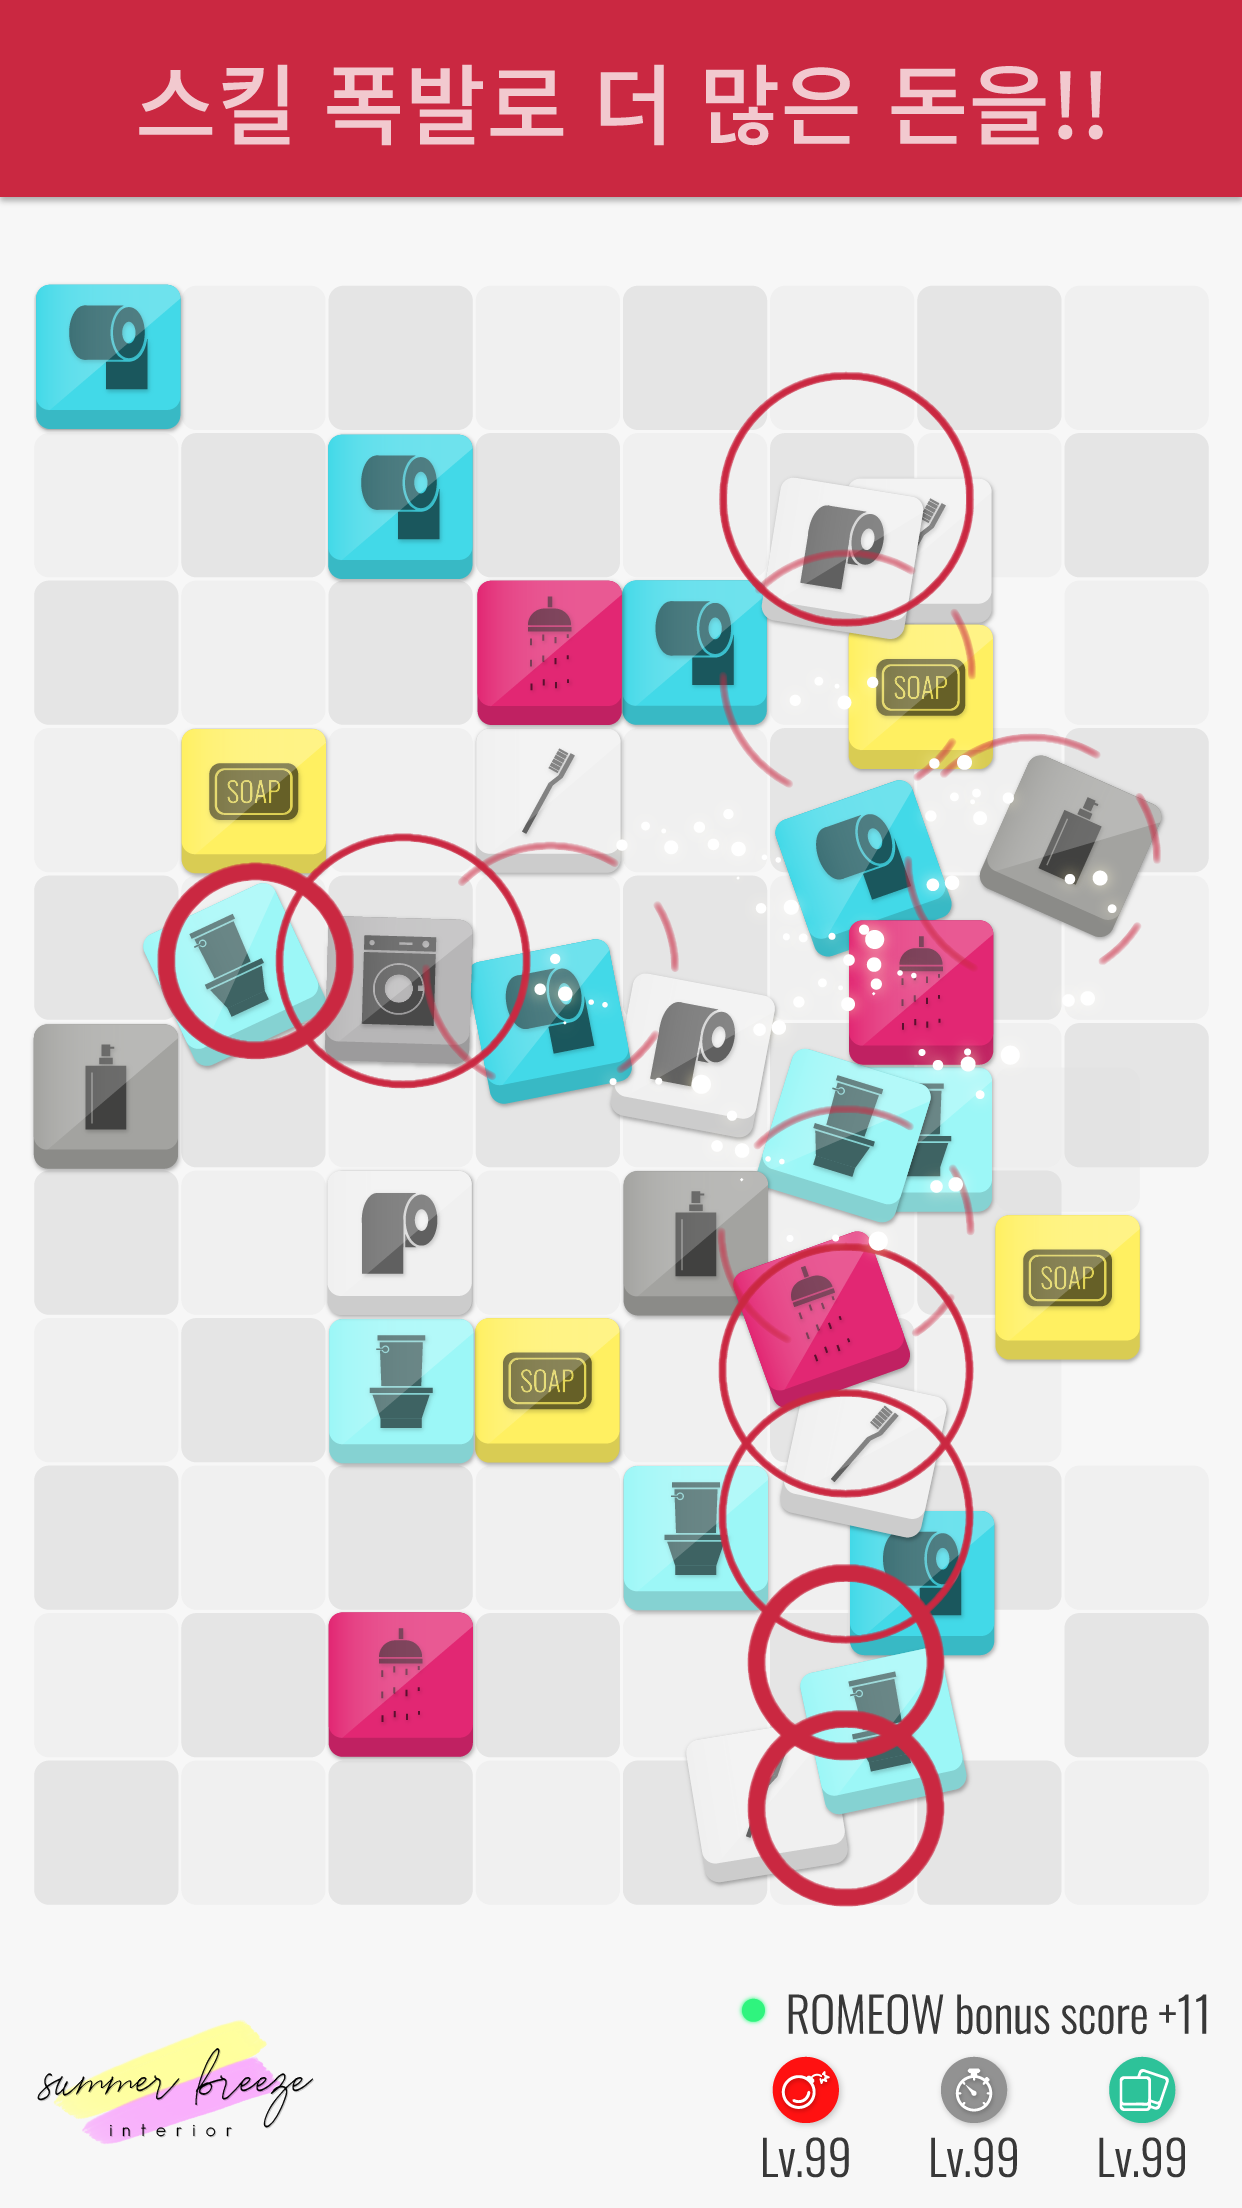 Mapa da casa da princesa rosa 2018 para MCPE versão móvel andróide iOS apk  baixar gratuitamente-TapTap